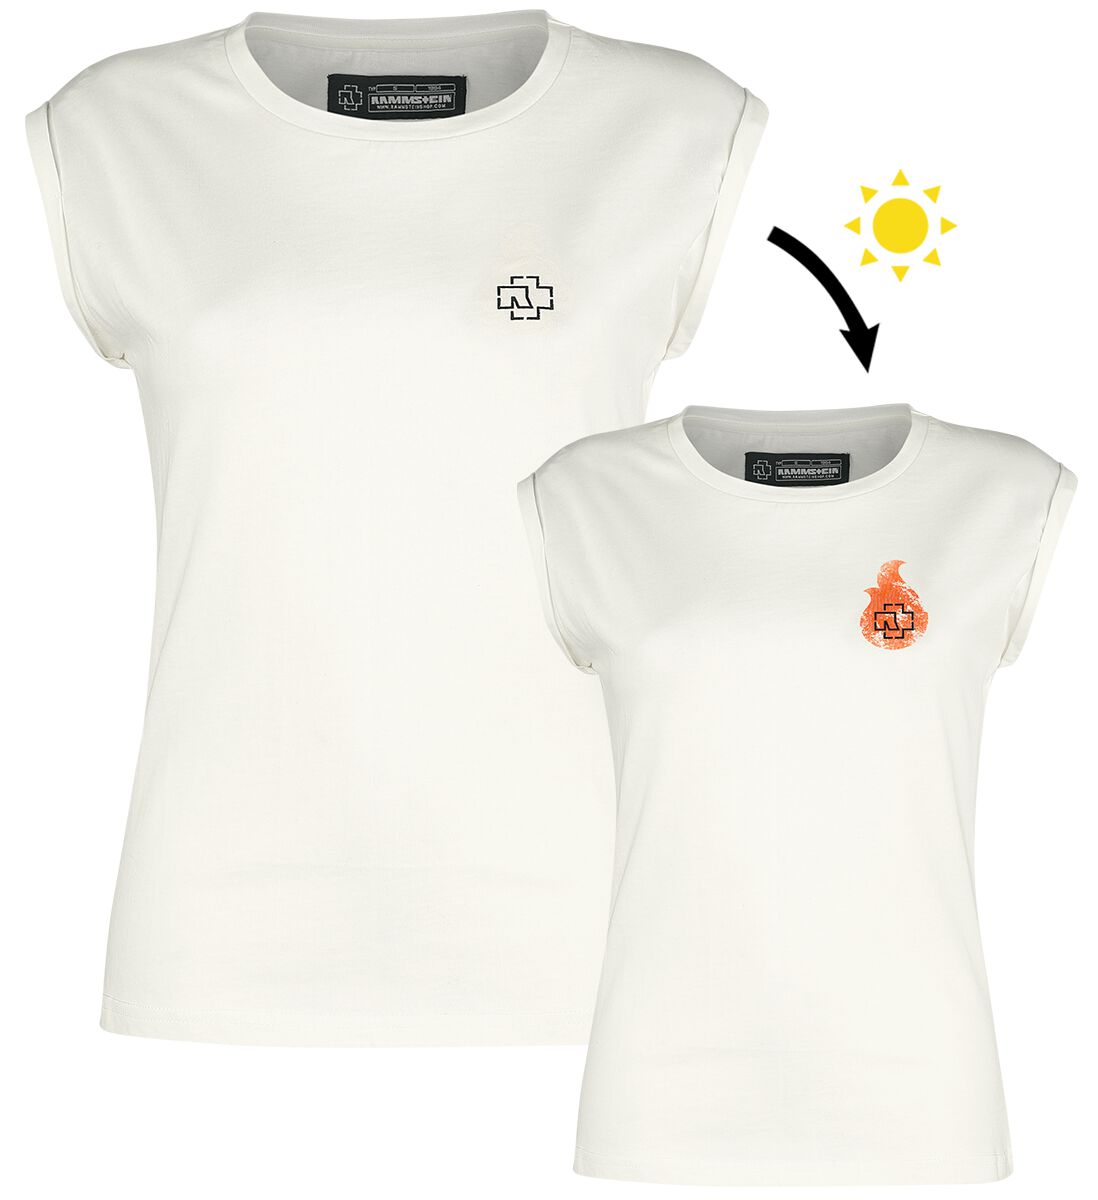 T-Shirt Manches courtes de Rammstein - Flamme - S à XXL - pour Femme - blanc